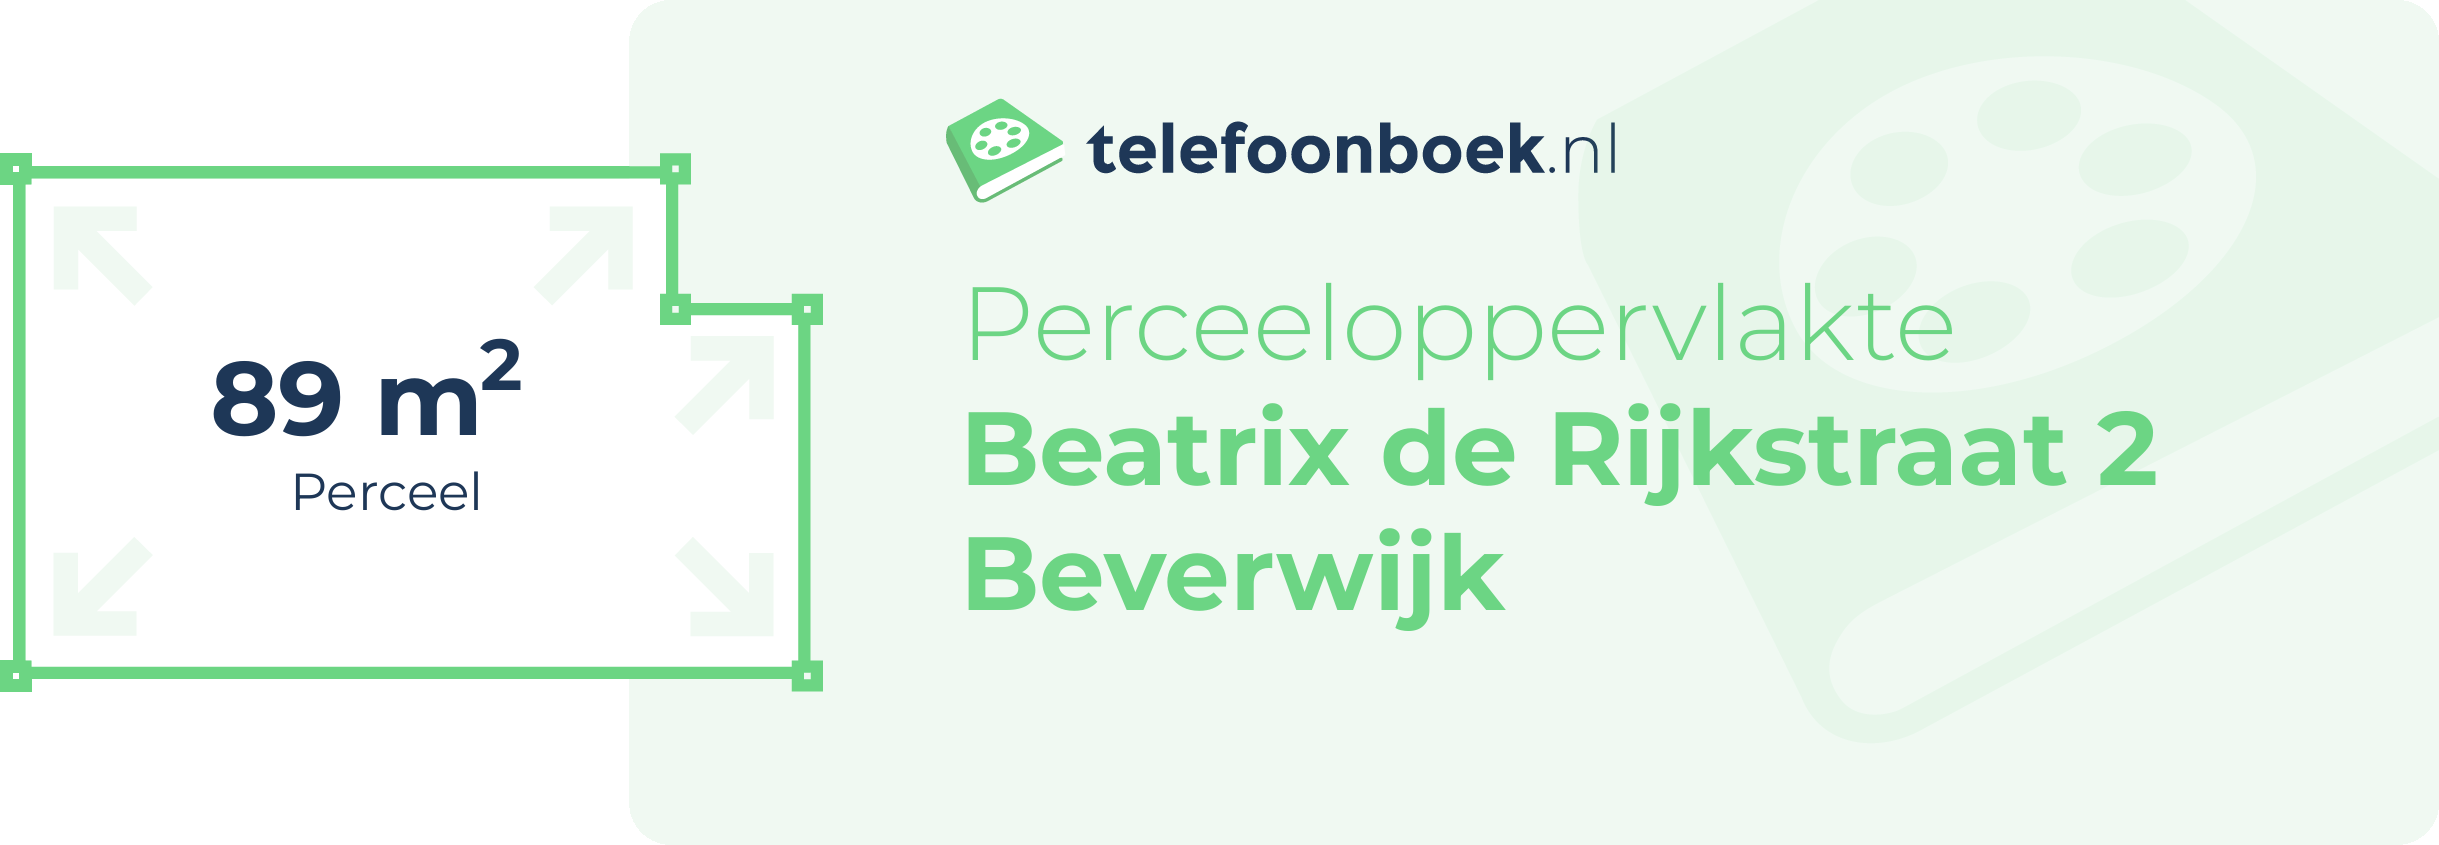 Perceeloppervlakte Beatrix De Rijkstraat 2 Beverwijk